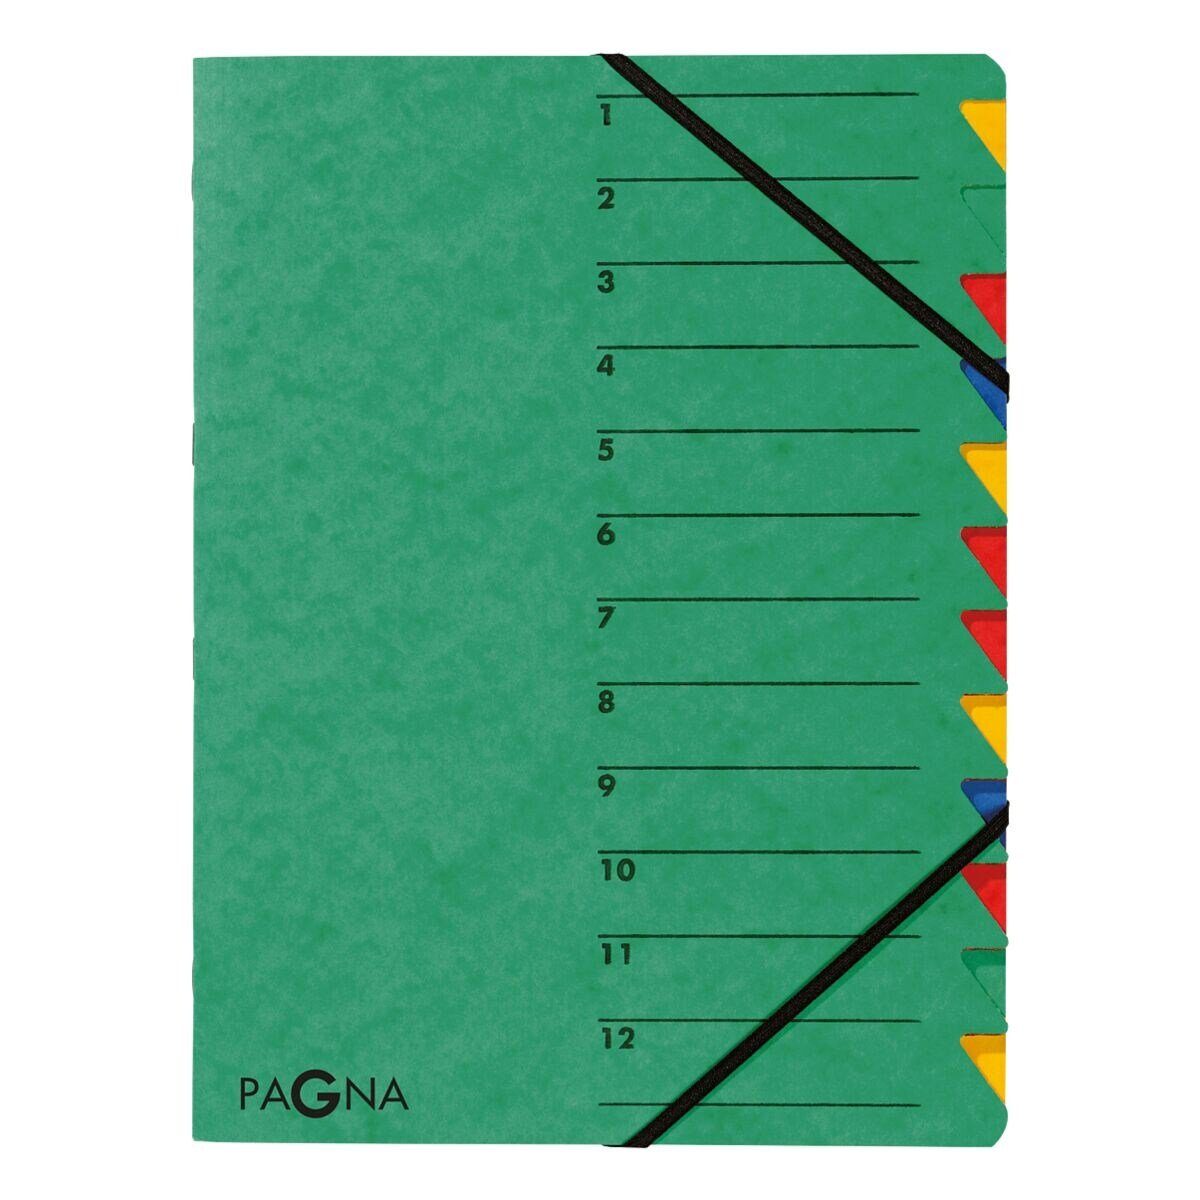 PAGNA Organisationsmappe Standard, Ordnungsmappe mit 12 Fächern, A4 grün